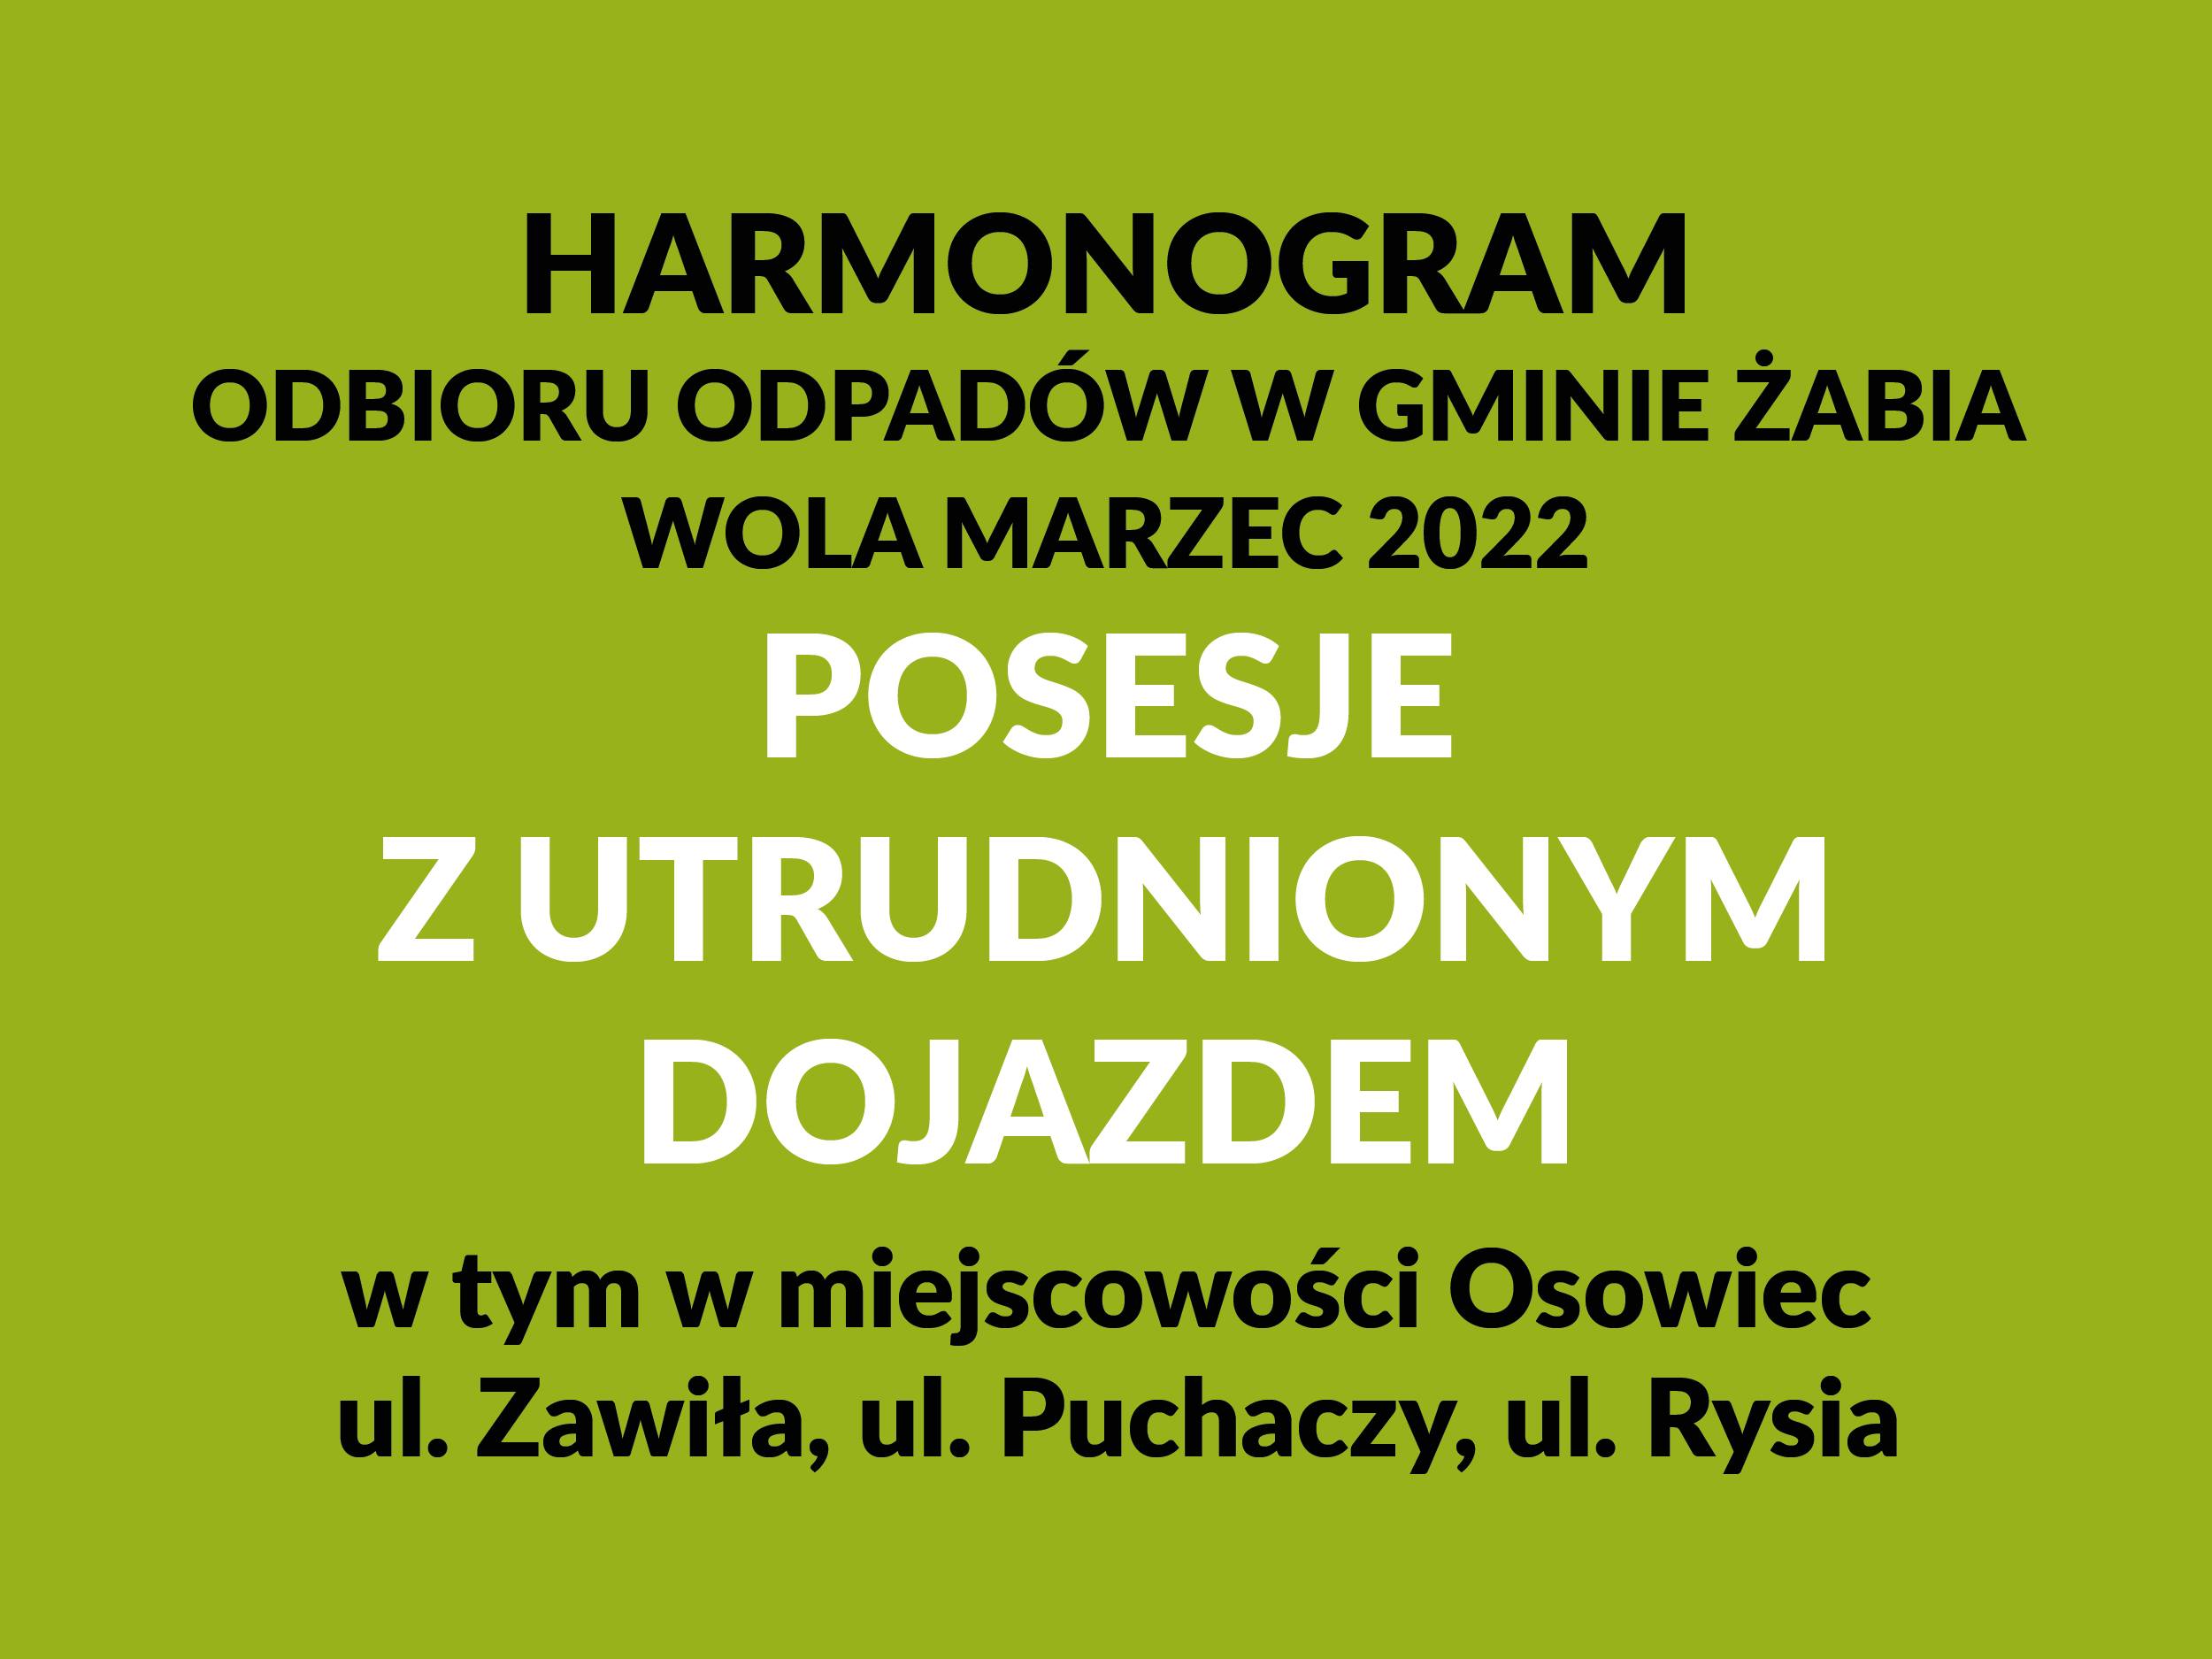 Harmonogram odbioru odpadów – marzec 2022 r. Posesje z utrudnionym dojazdem (dotyczy również miejscowości Osowiec, ul. Zawiła, ul. Puchaczy, ul. Rysia).